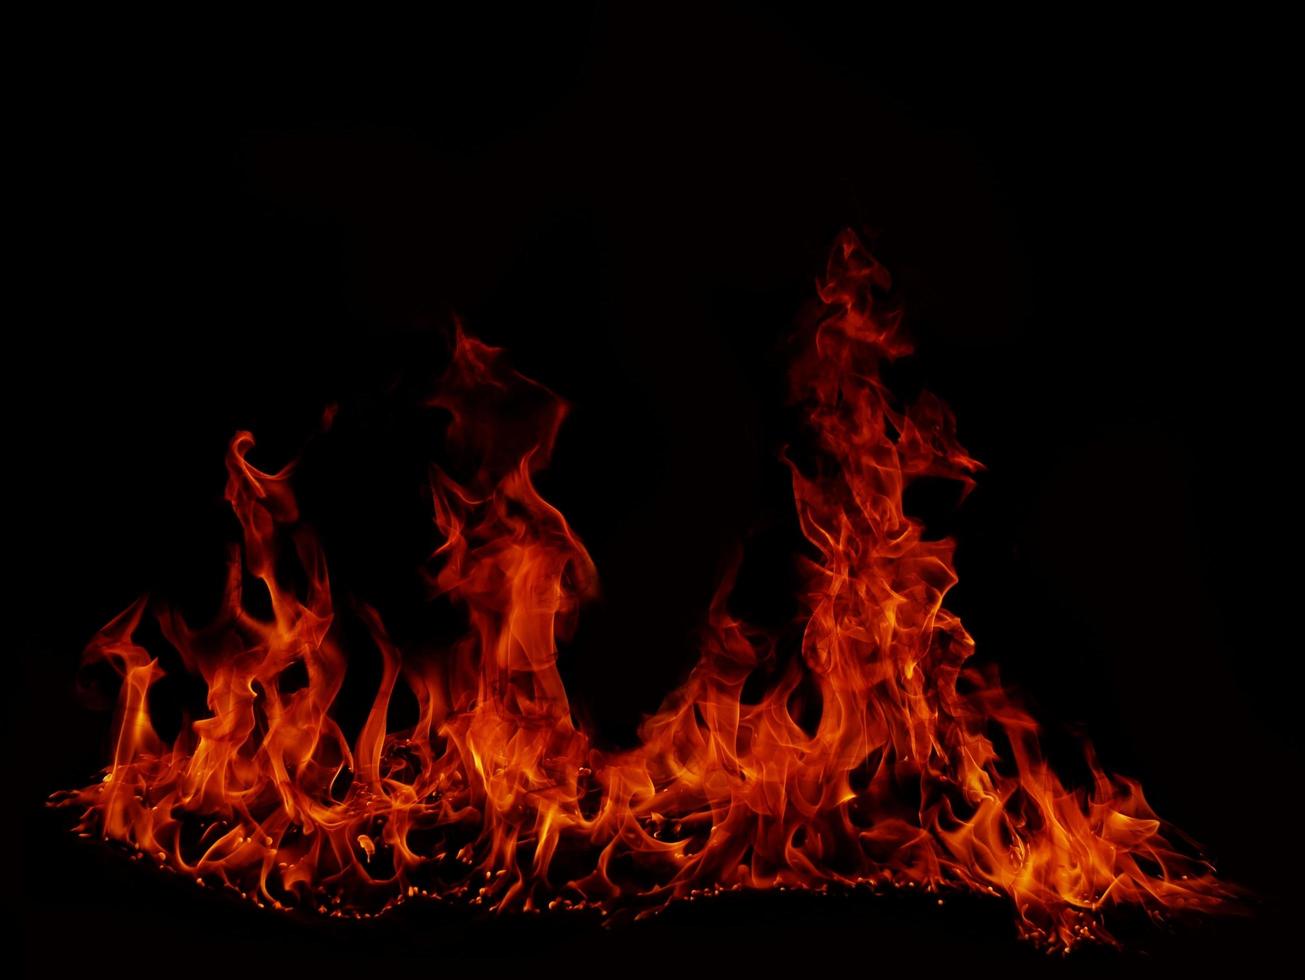 flame flame textur för konstig form eld bakgrund flame kött som bränns från spisen eller från matlagning. fara känsla abstrakt svart bakgrund lämplig för banderoller eller reklam. foto